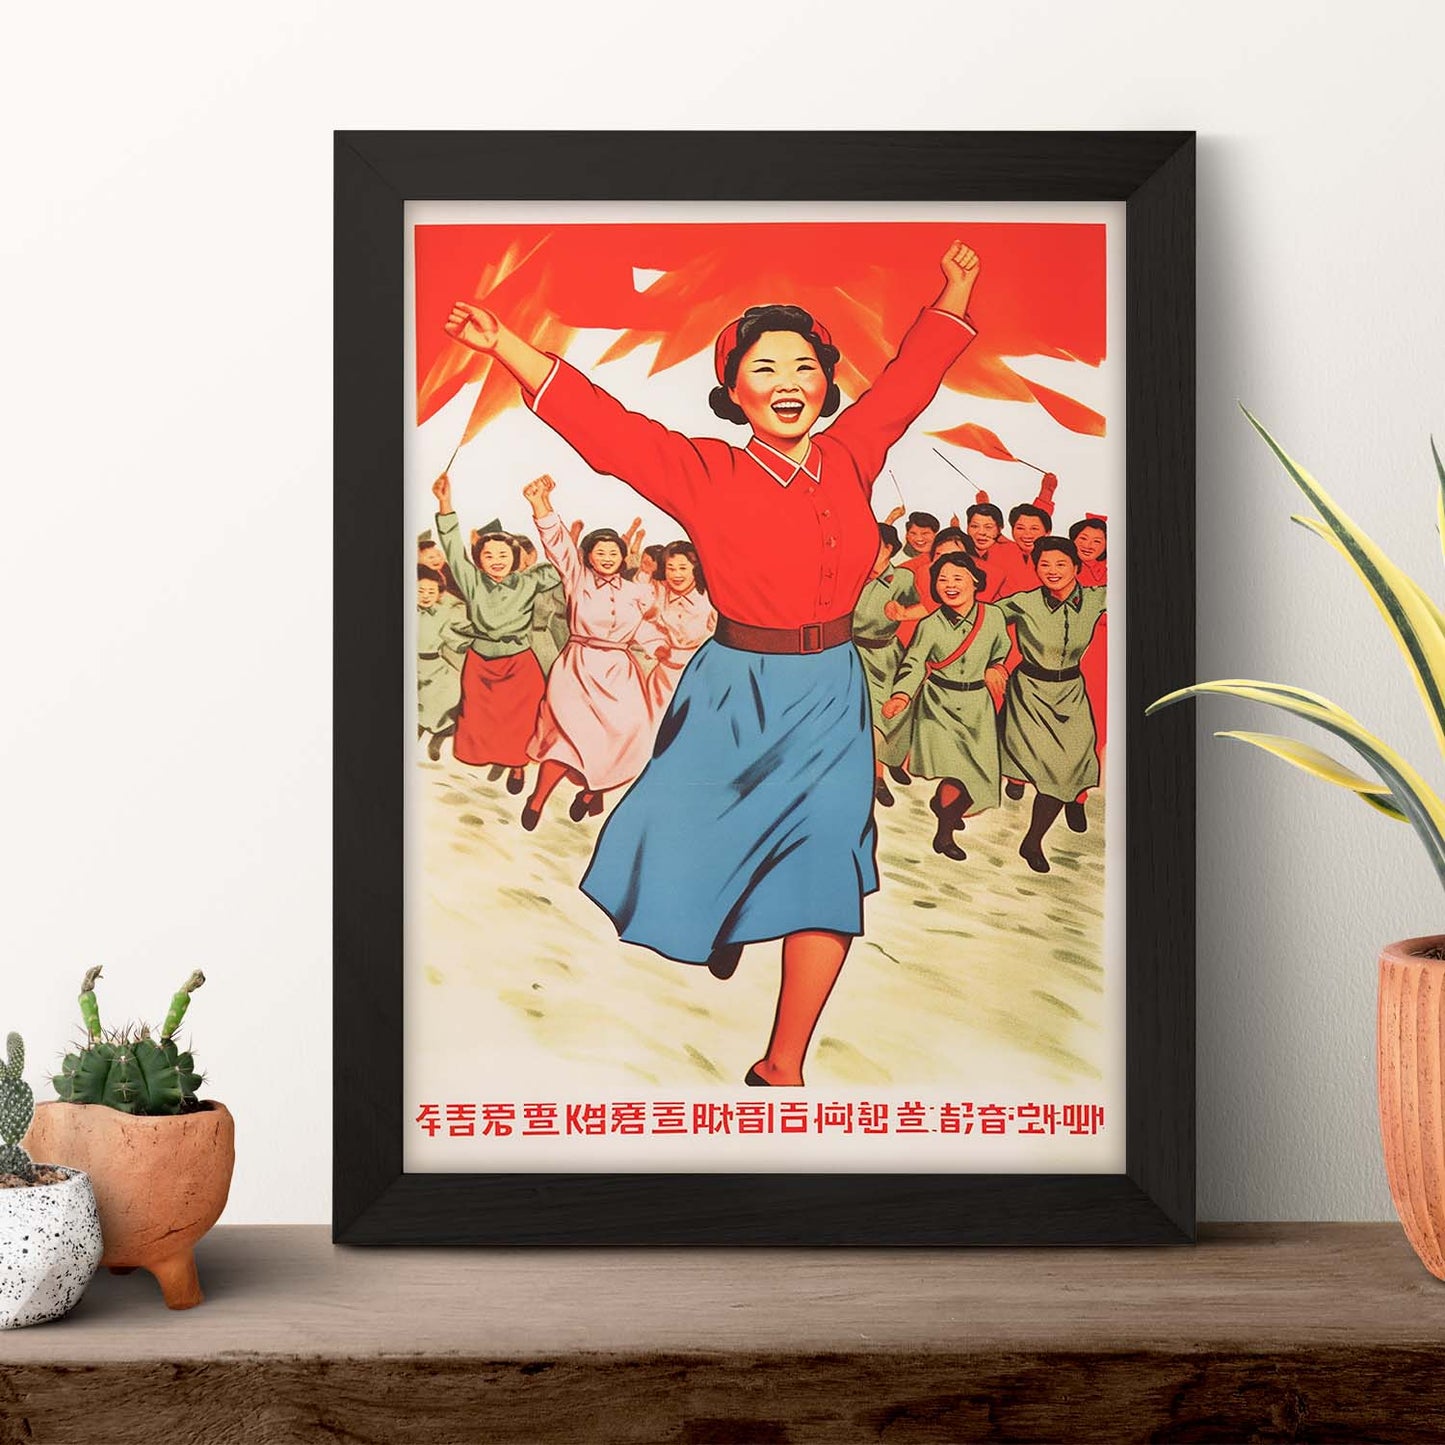 Póster del Partido Socialista de Corea del Norte